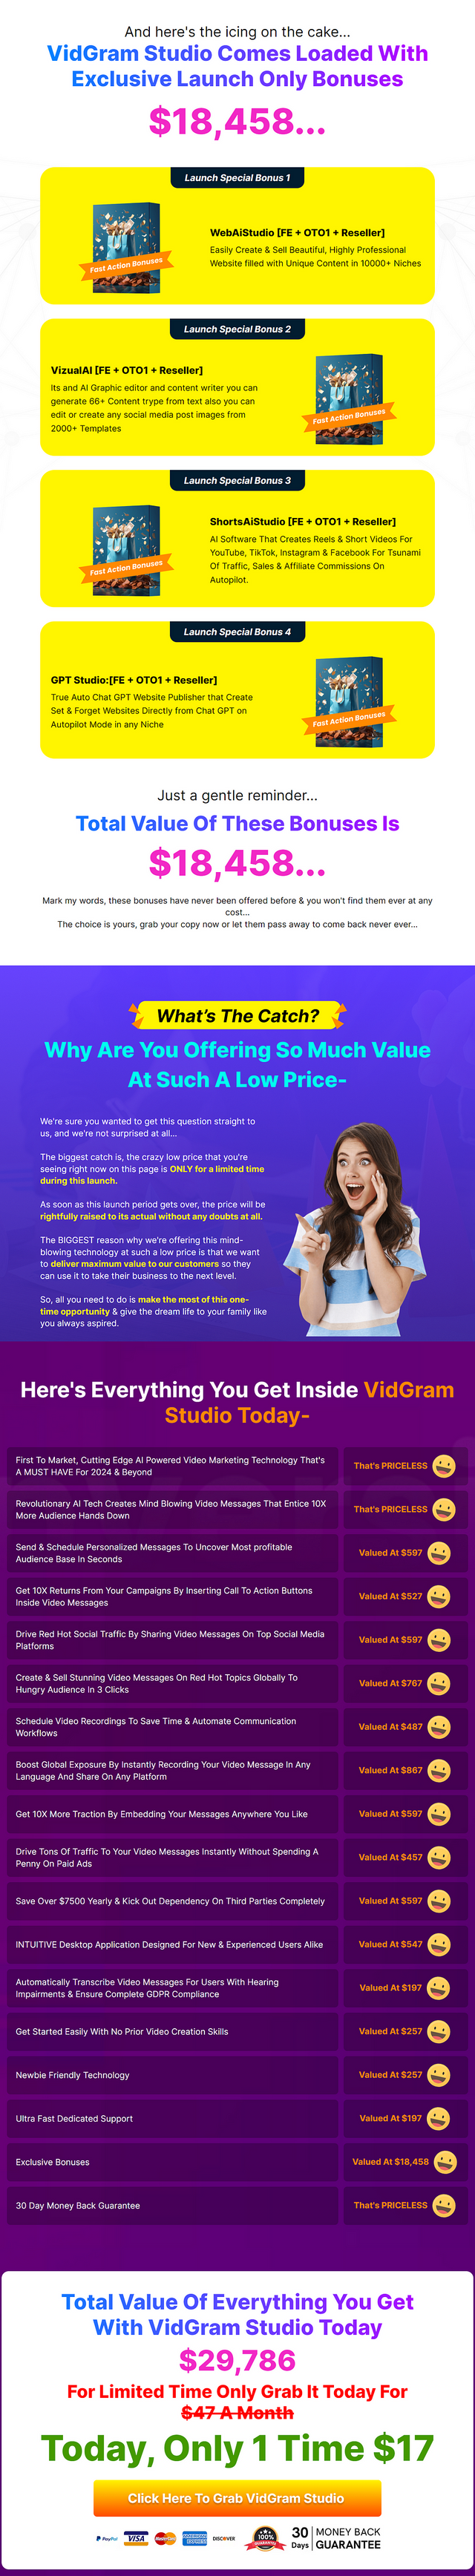 VidGram Studio